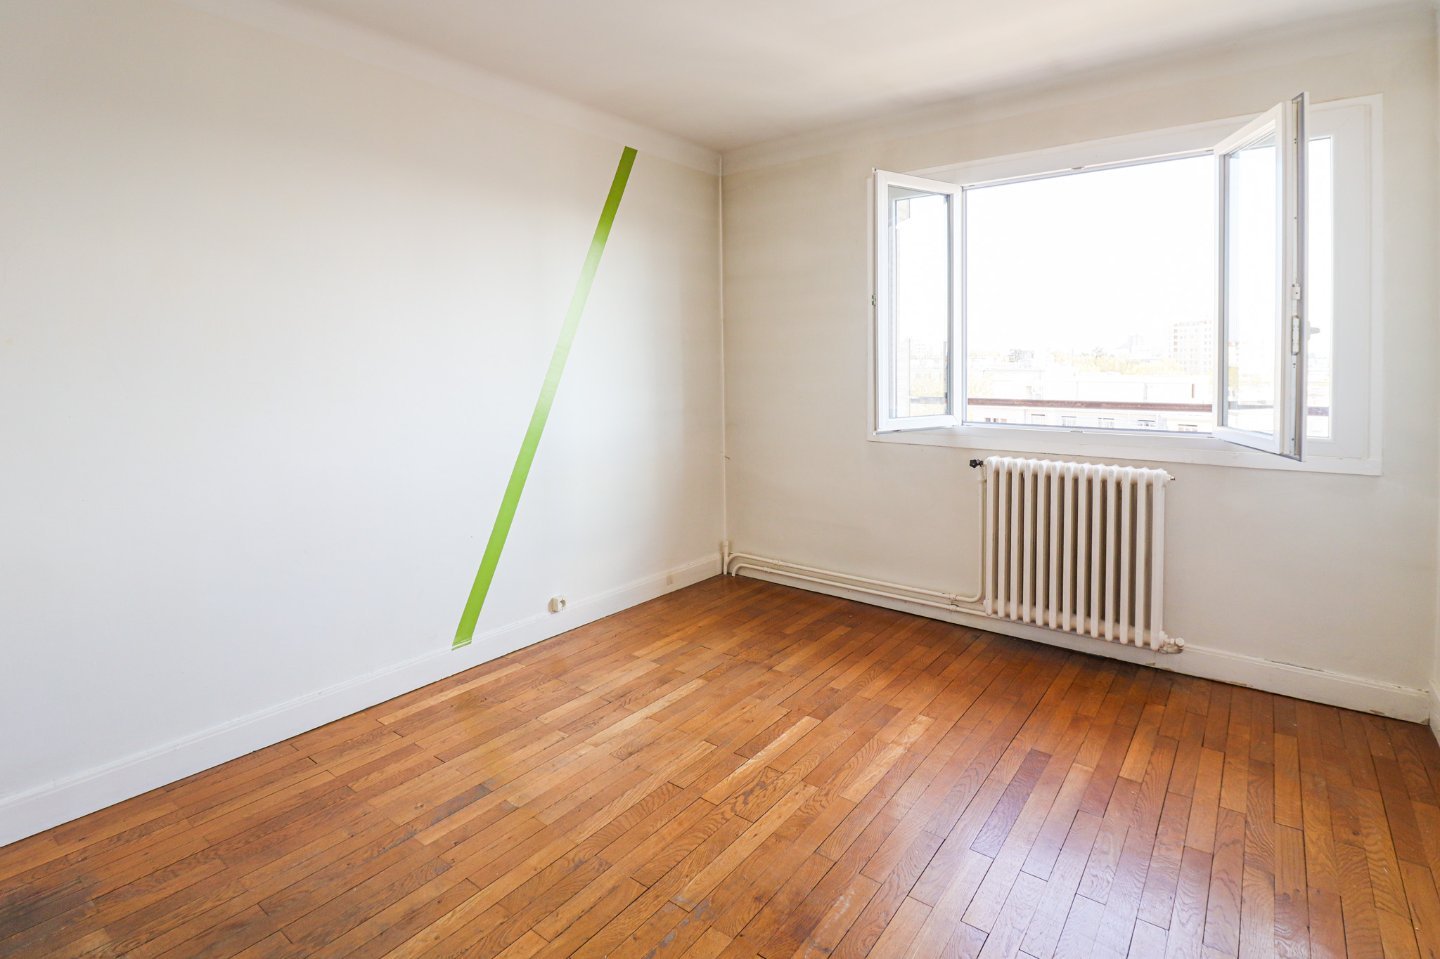 Appartement de type 3 en dernier étage A VENDRE - LYON 3EME ARRONDISSEMENT - 71,6 m2 - 356 000 €